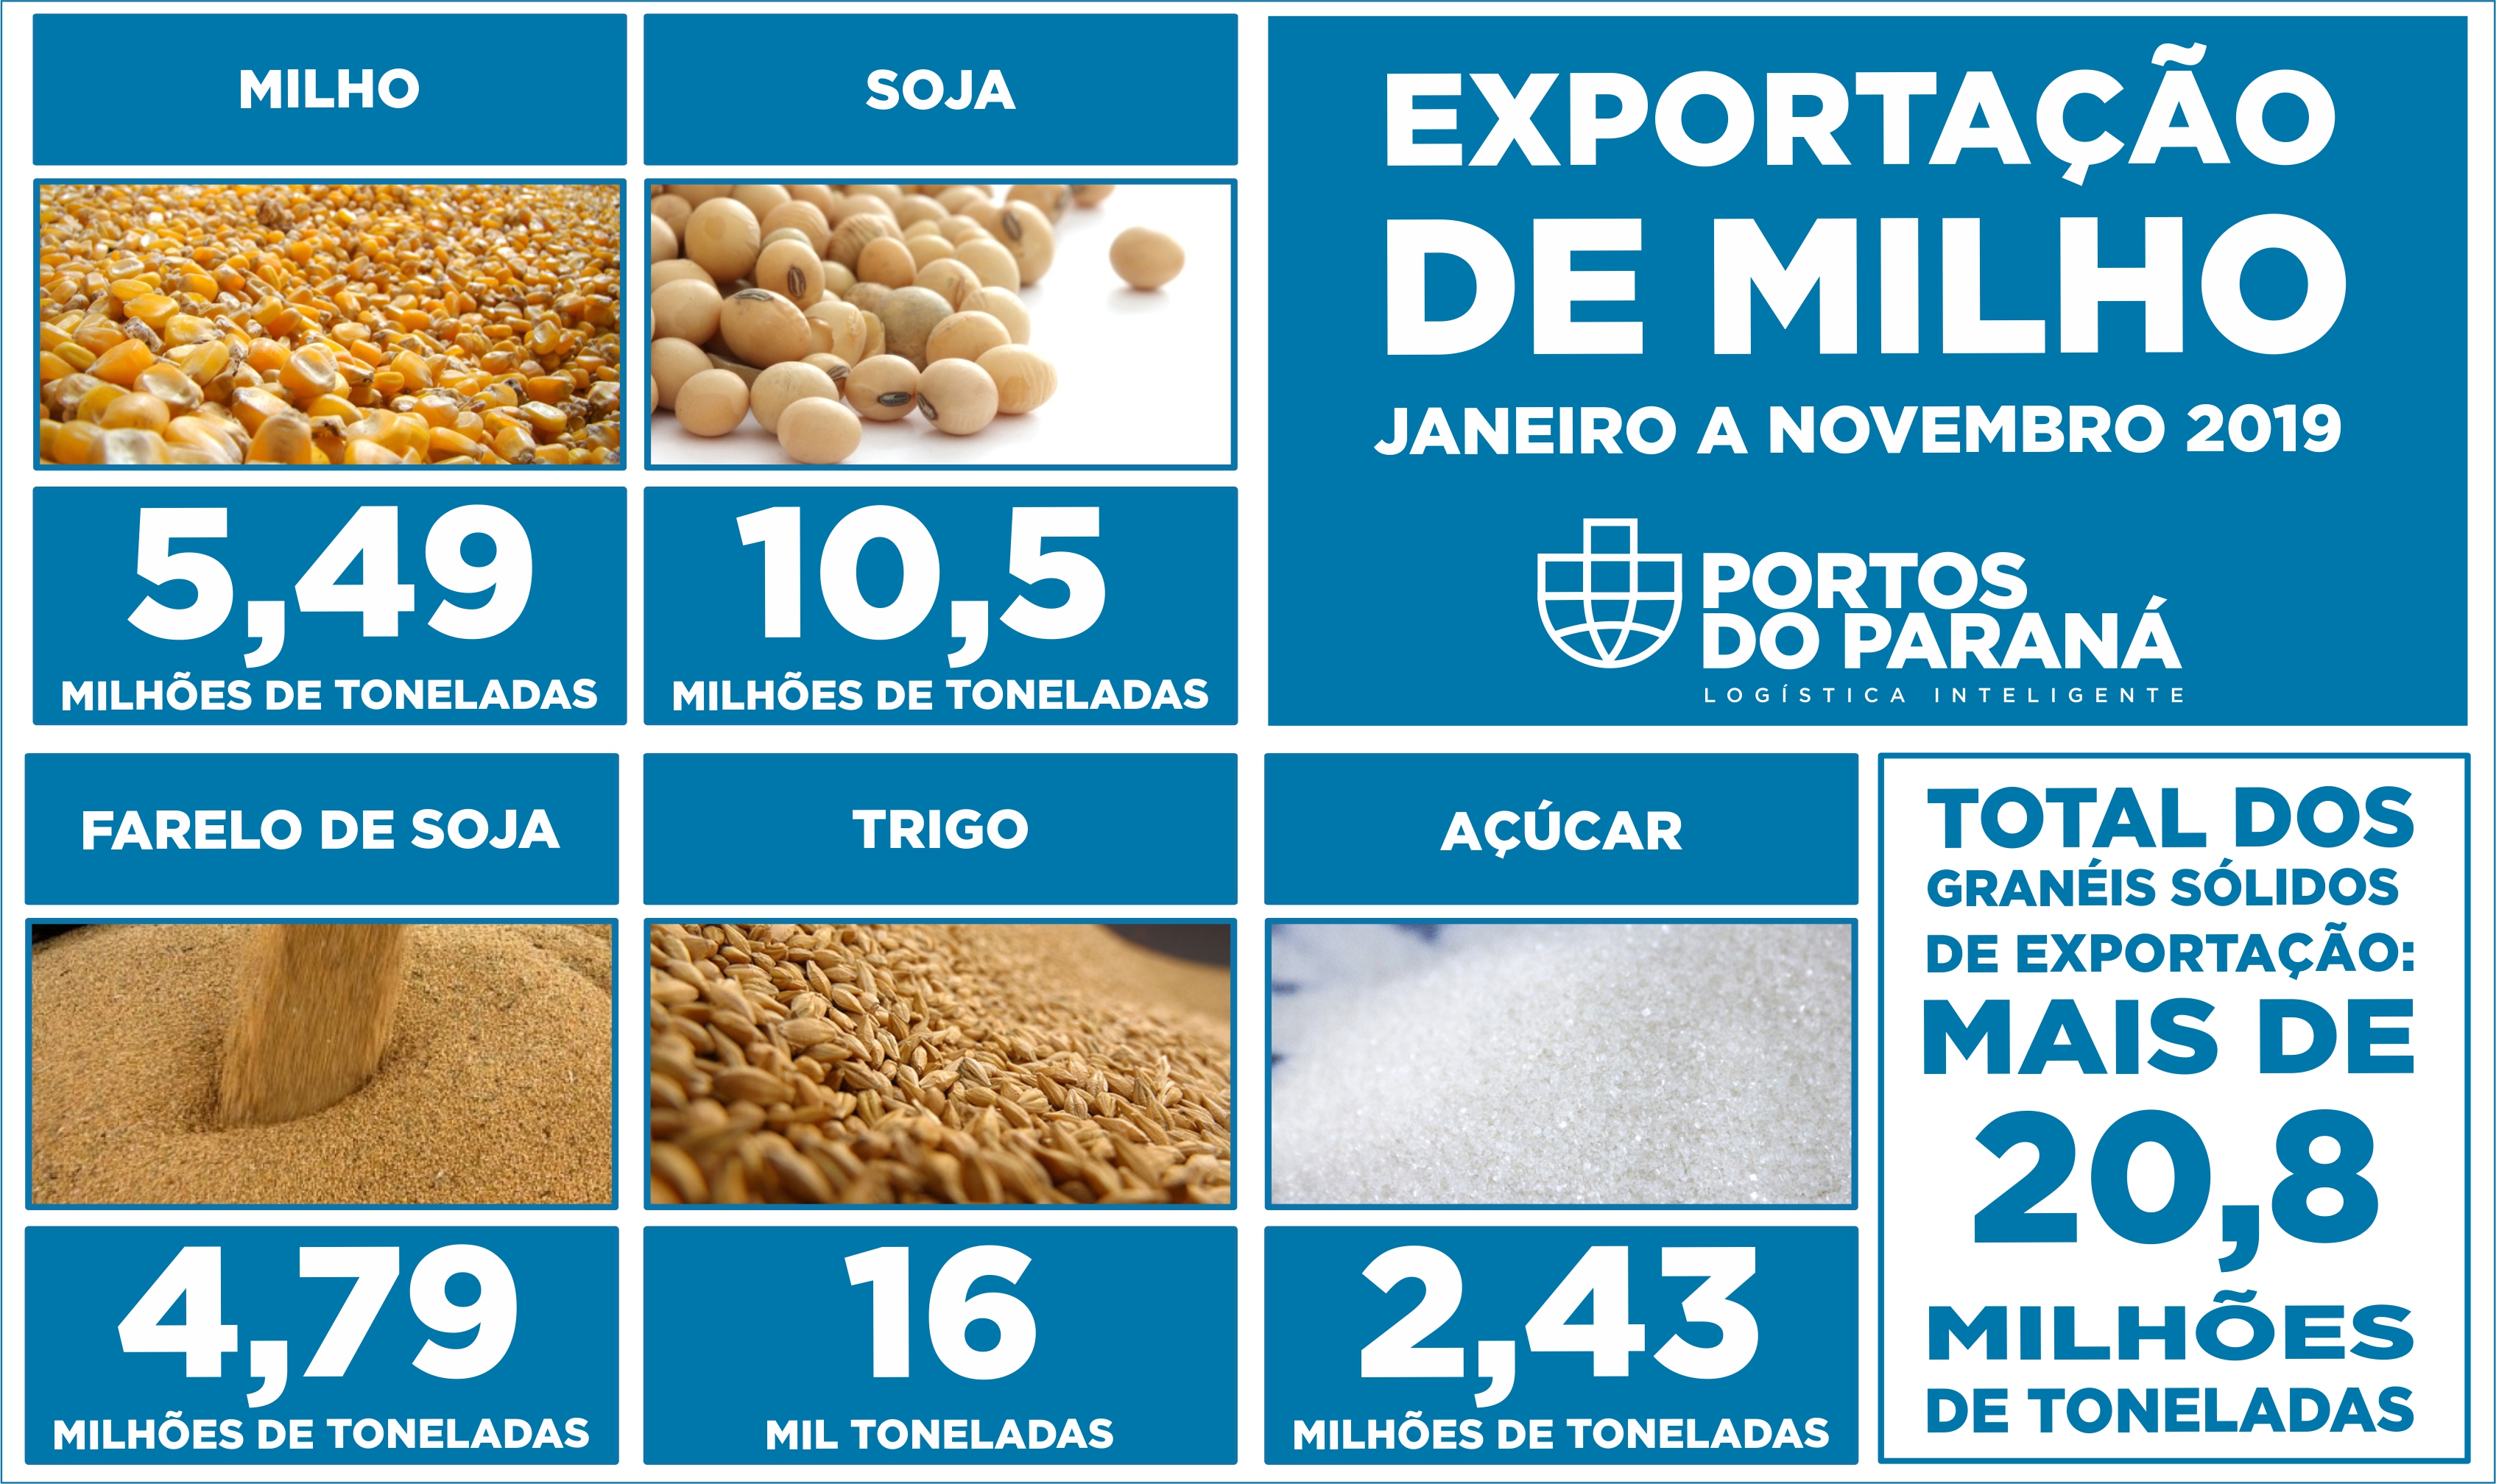 Dos granéis sólidos de exportação, saíram por Paranaguá em torno de 20,8 milhões de toneladas de produtos exportados, de janeiro a novembro de 2019. O volume é 1% maior do que as 20,55 milhões de toneladas em 2018, no mesmo período.